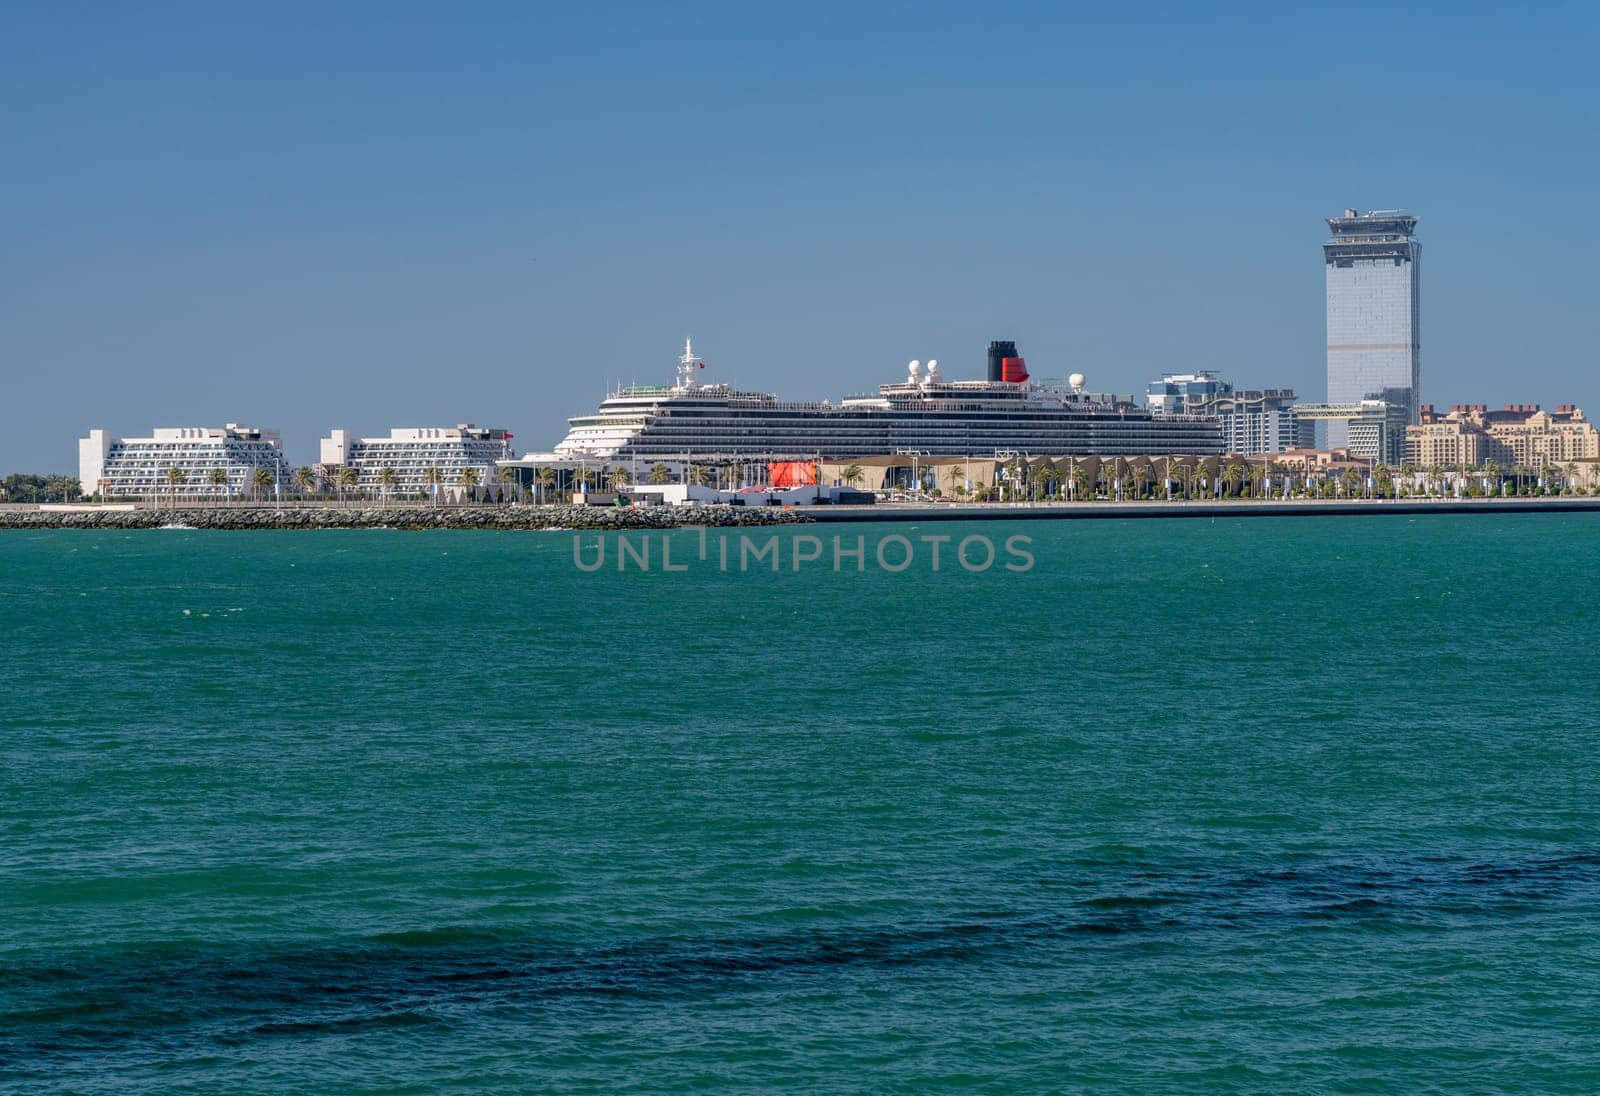 Cunard Queen Victoria in harbor in Dubai by steheap